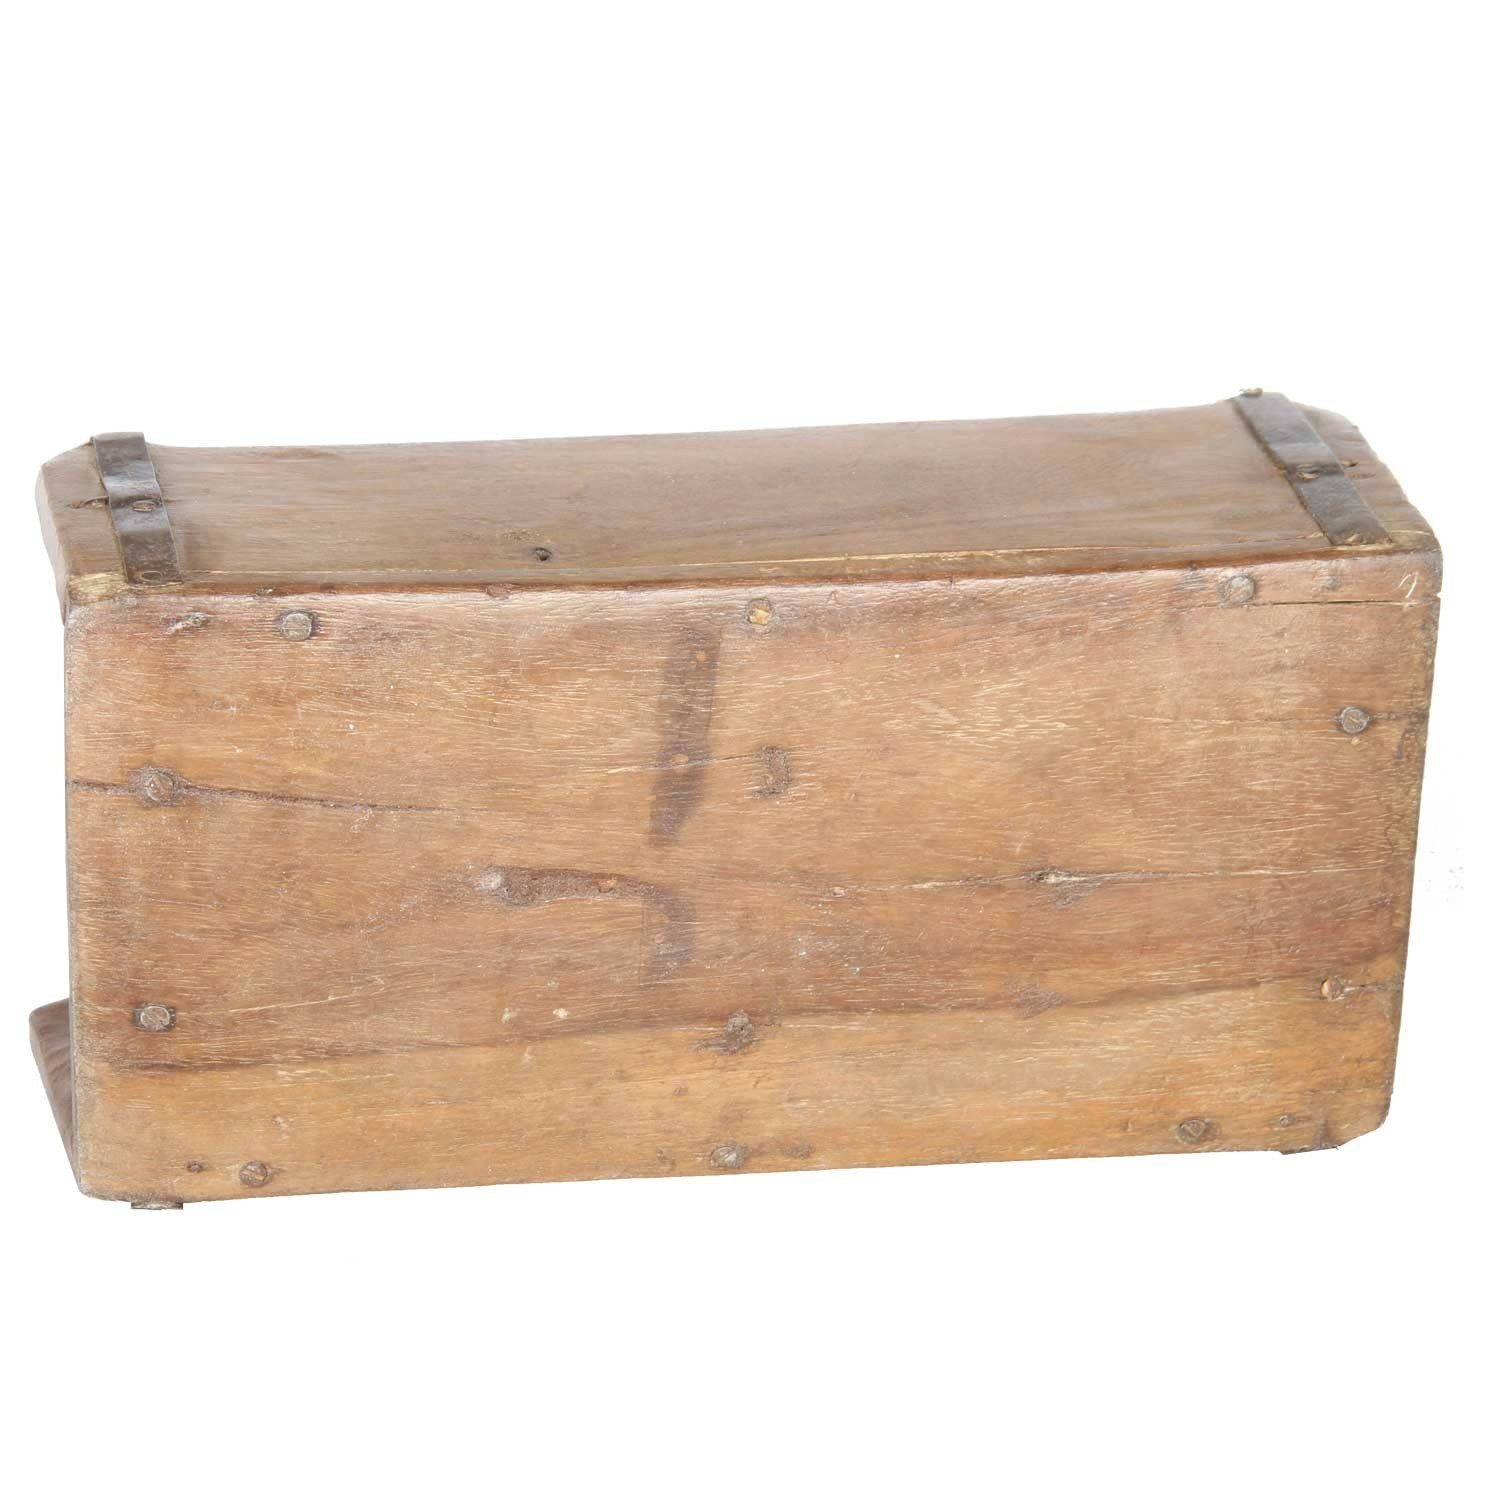 Ziegelform Alte Casa Moro Holzbox, aus Balu Aufbewahrungsbox Altholz, Kiste aufbereitetes Ziegelform Backsteinform, Vintage Deko aus Altholz,